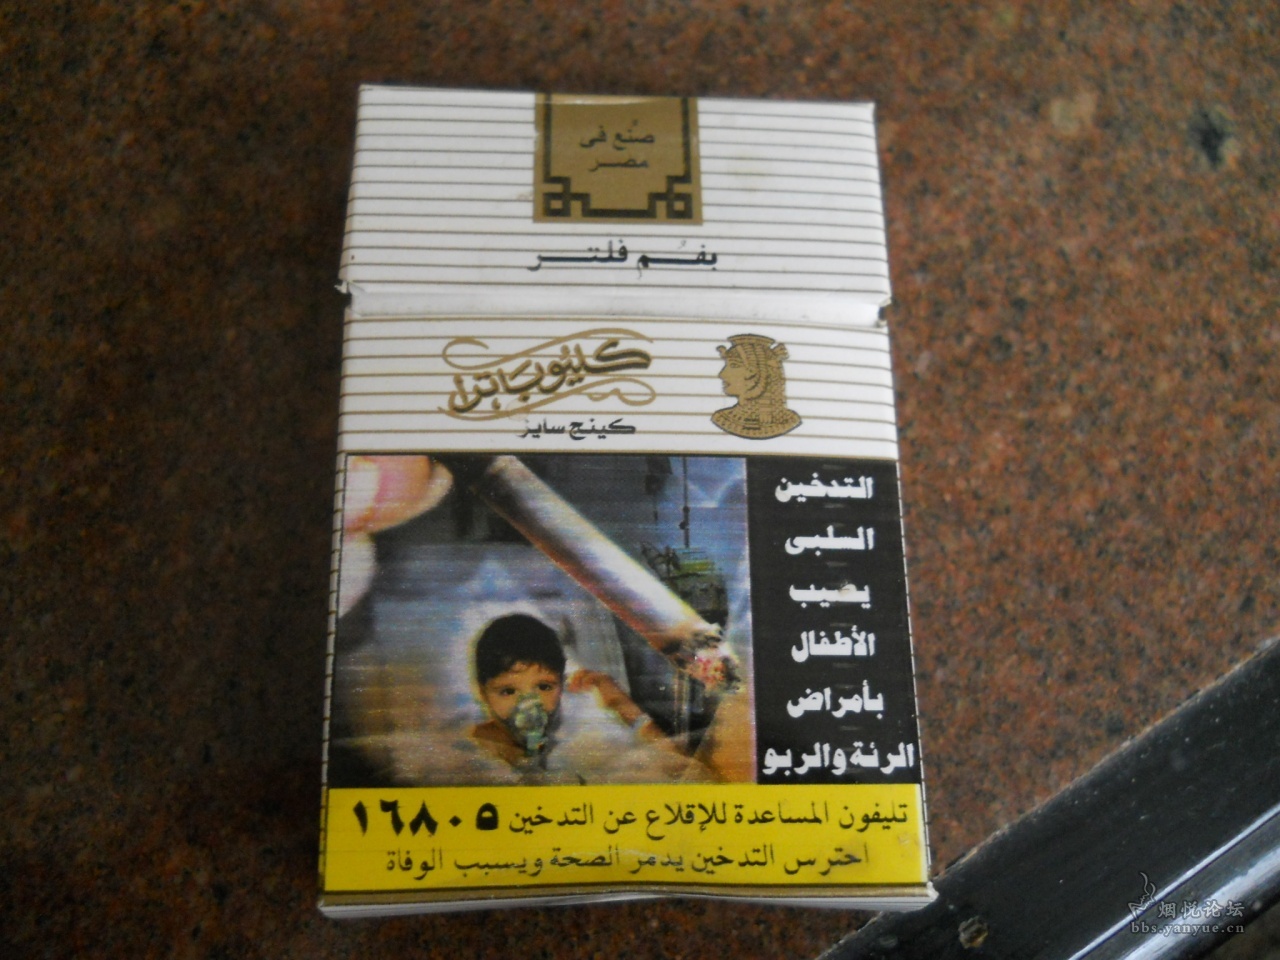 埃及免税版CLEOPATRA 3D标 - 烟标天地 - 烟悦网论坛